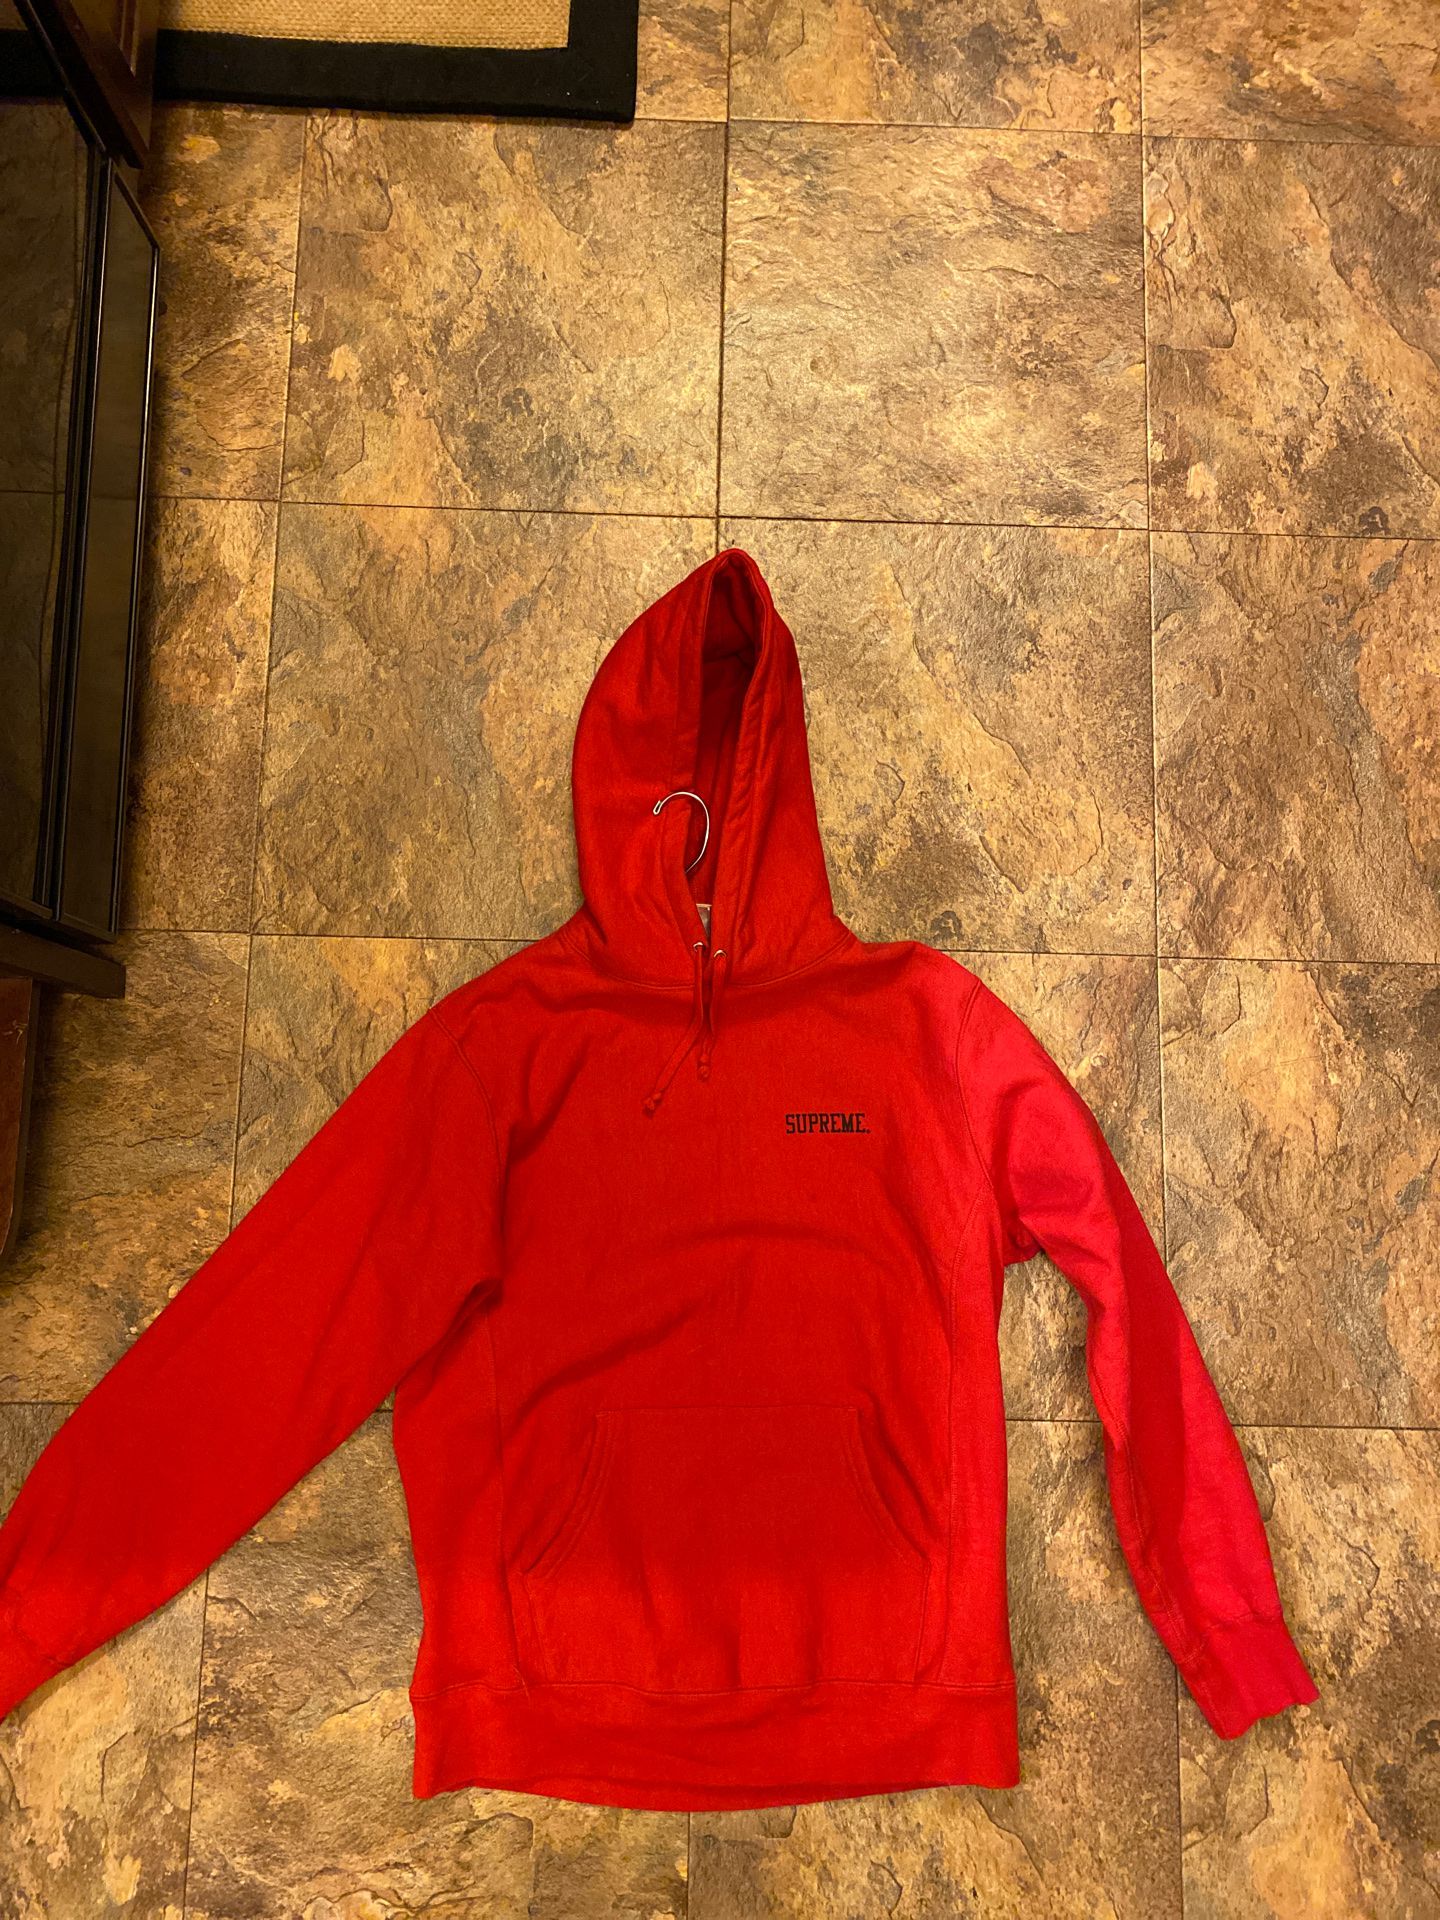 Supreme Ruff Ryders hoodie (Large)